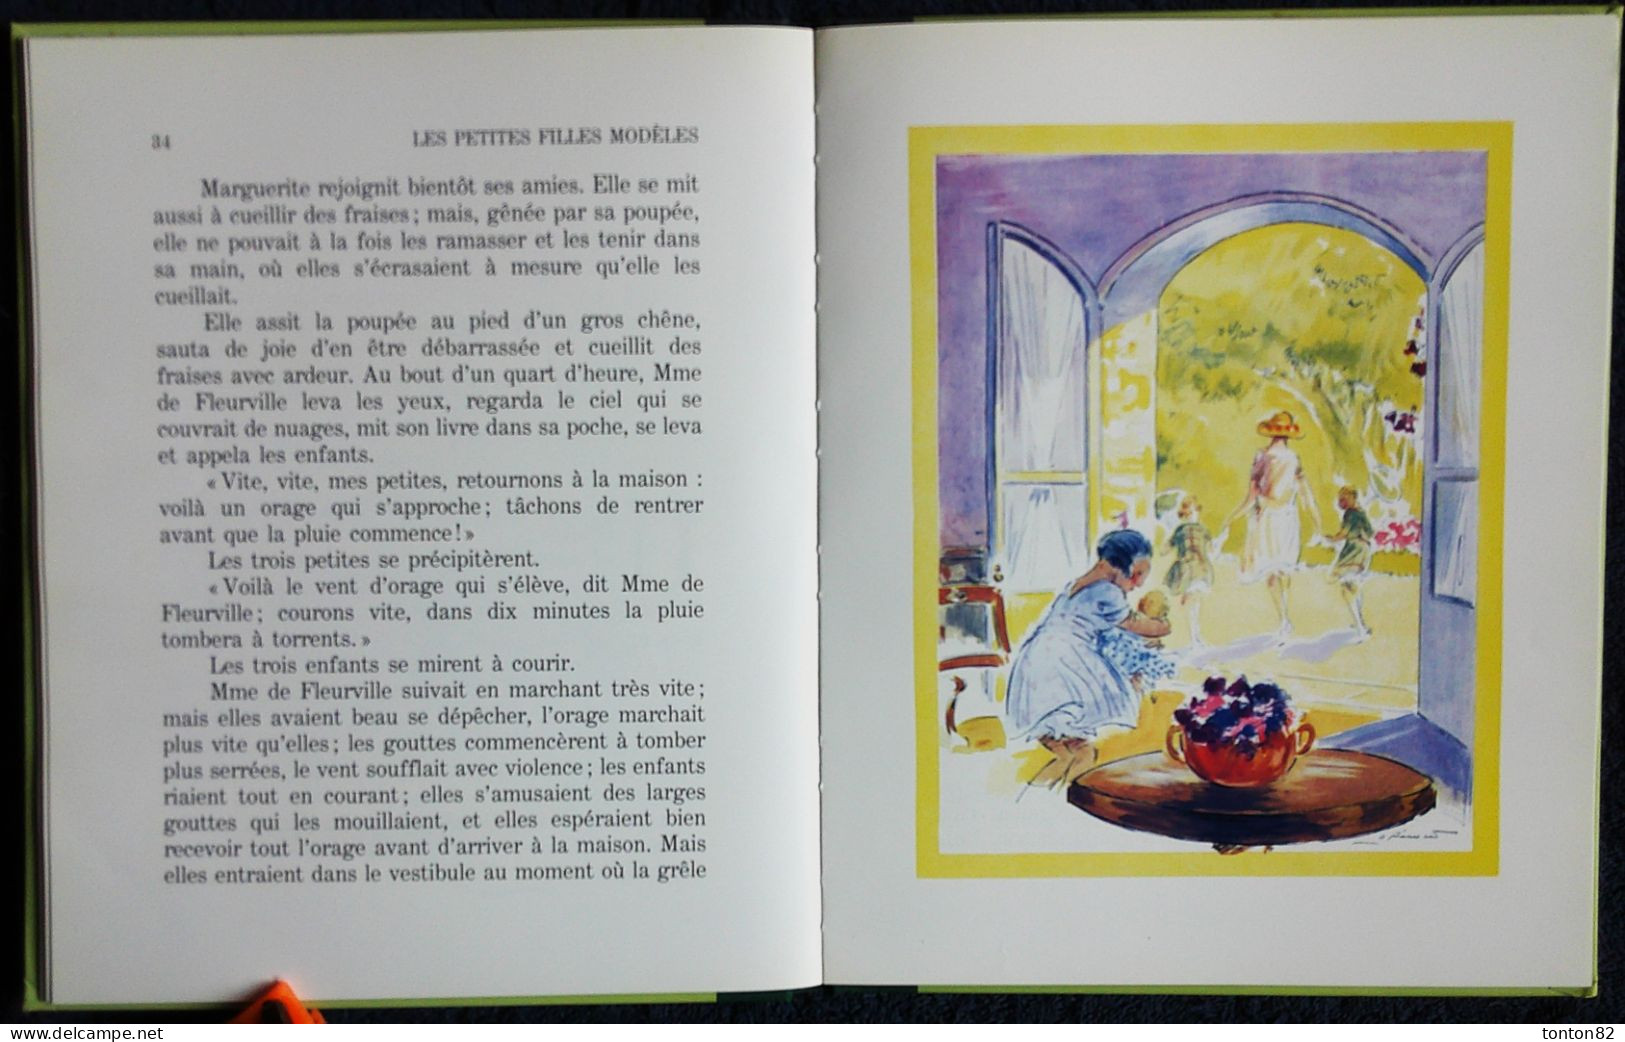 Comtesse de Ségur - Les Petites Filles Modèles - Hachette Jeunesse - ( 1991 ) - Illustrations couleurs André Pécoud .